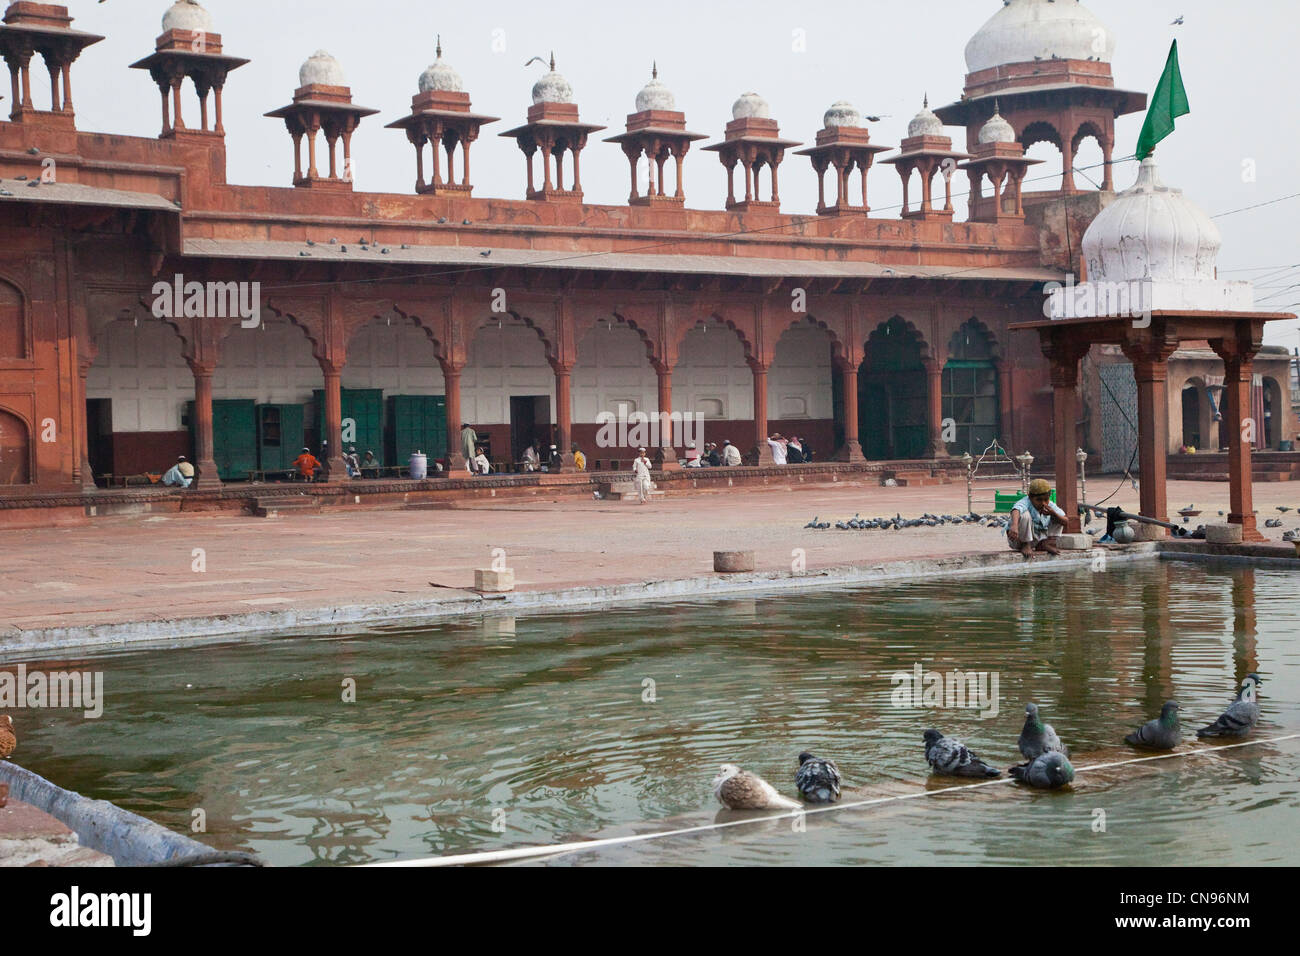 Agra, Inde. Cour de la Jama Masjid, la mosquée de vendredi. Ligne Chhatris le toit. Piscine pour les ablutions. Banque D'Images